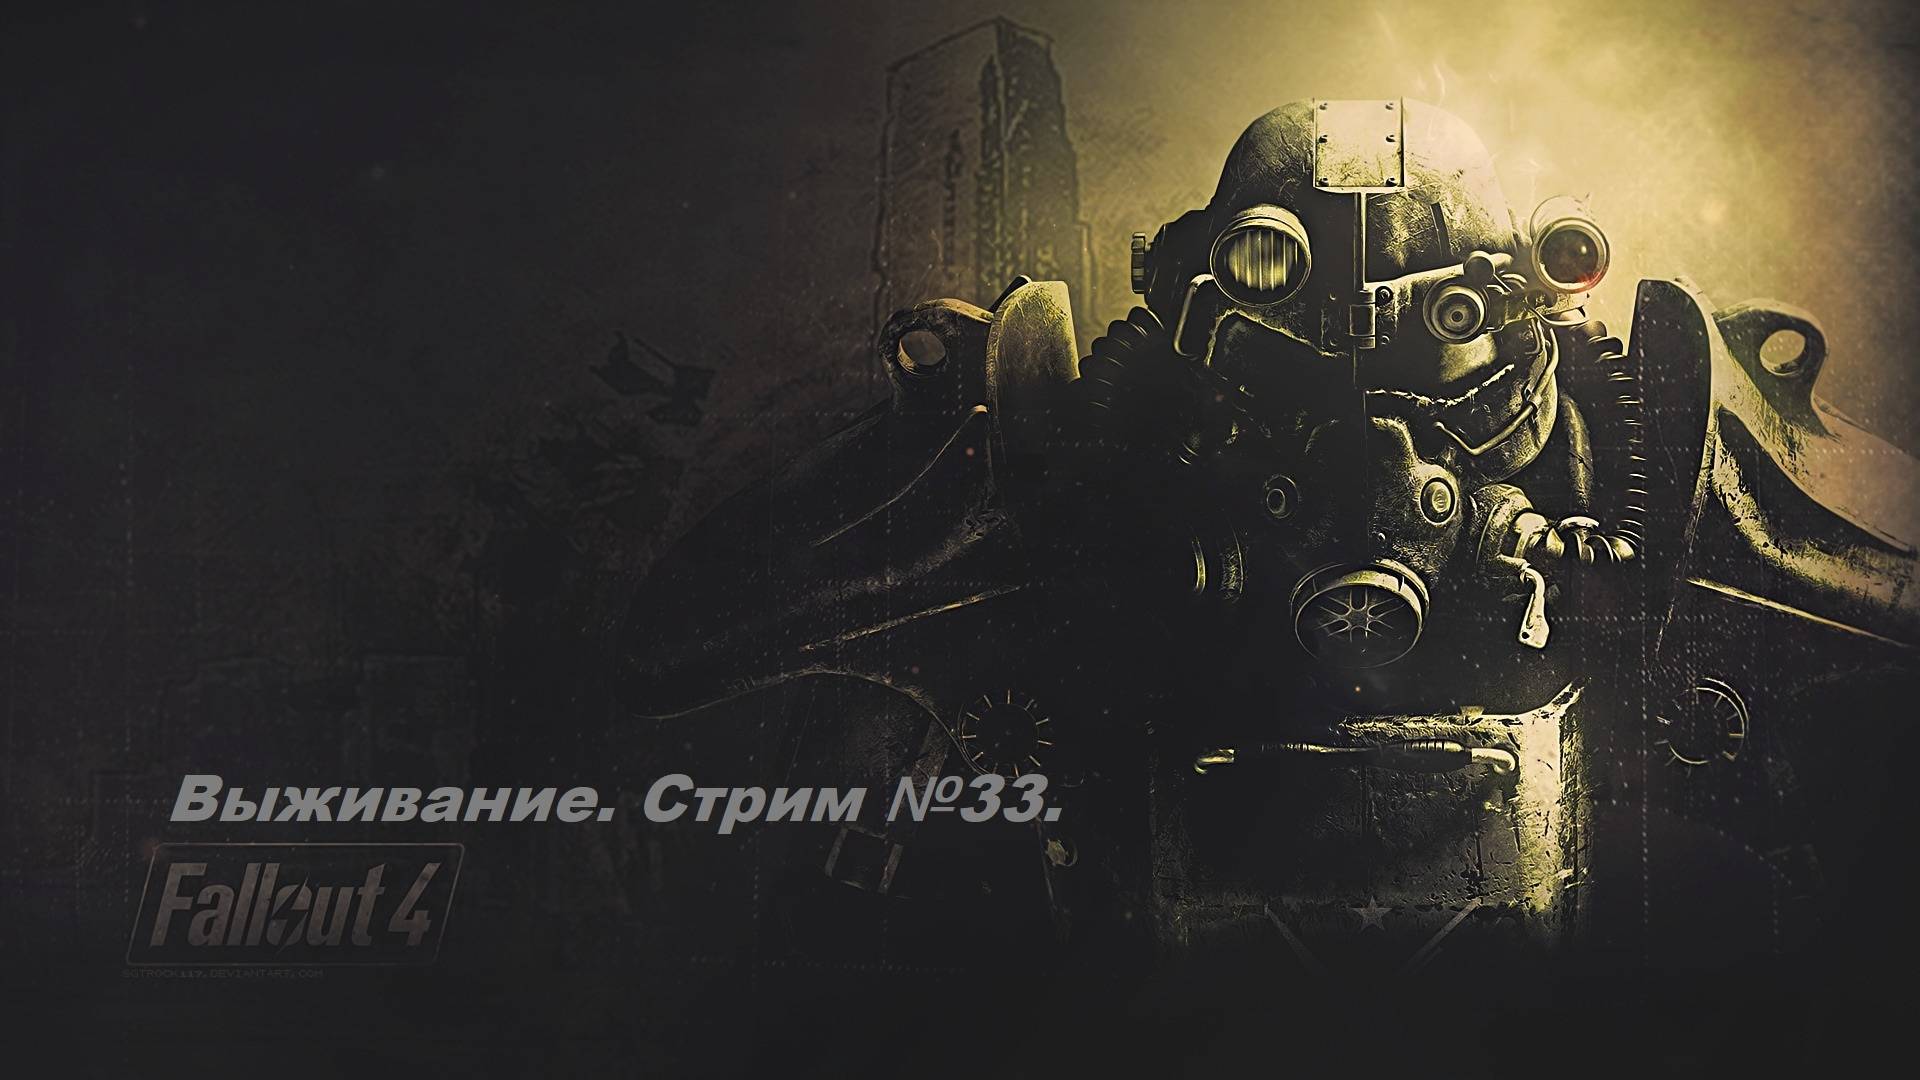 Fallout 4. Прохождение на уровне выживания первый раз! (Новичек без силовой брони) Стрим №33.